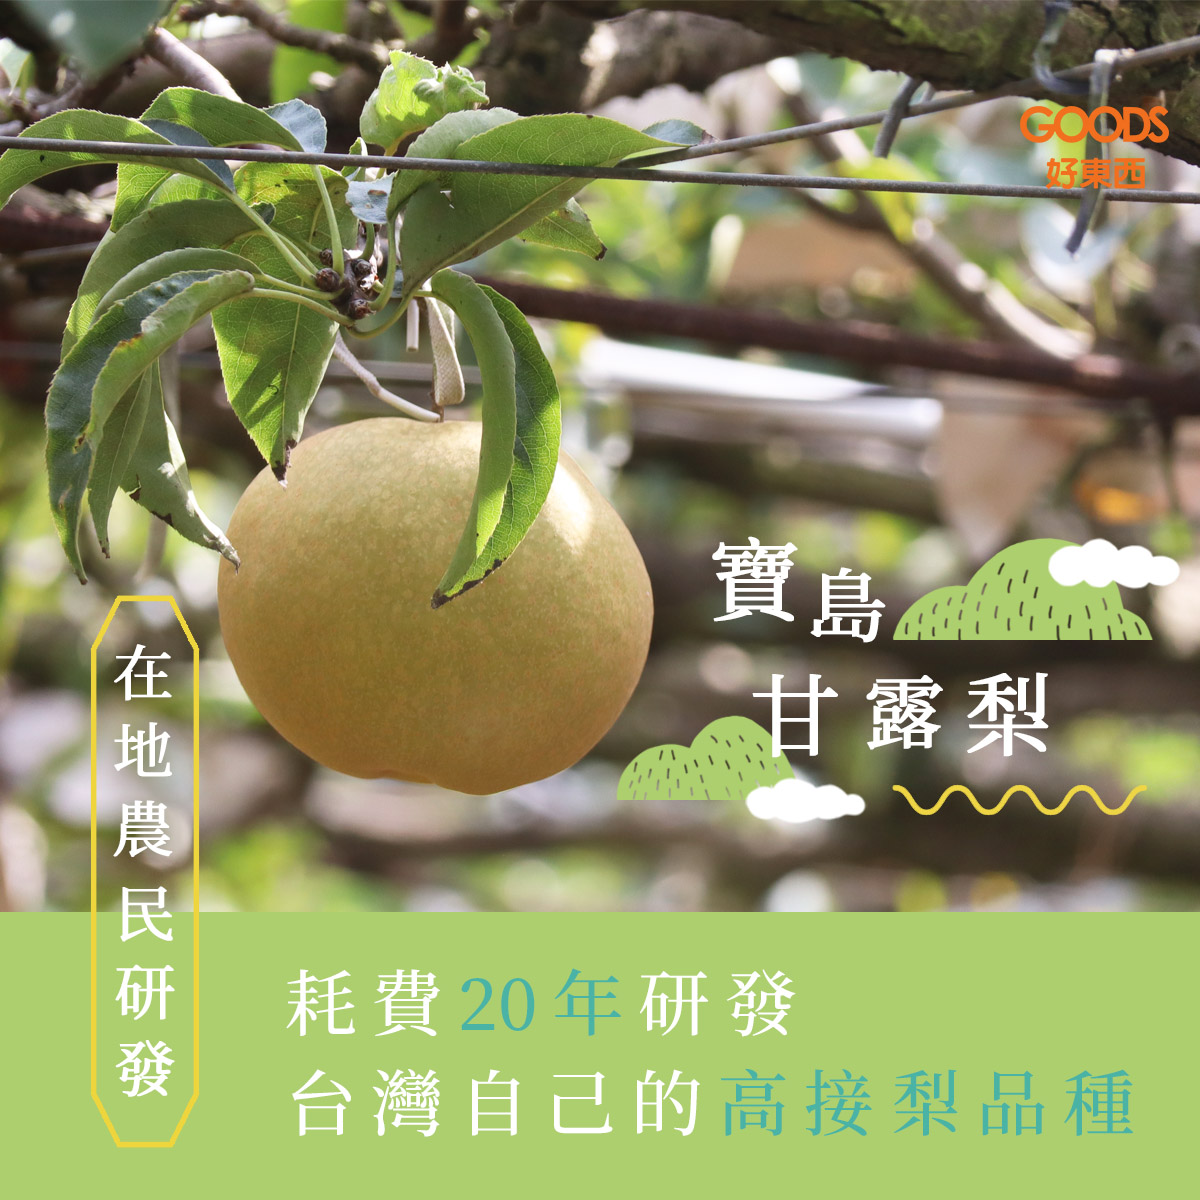 耗費20多年培育 台灣自己的高接梨品種